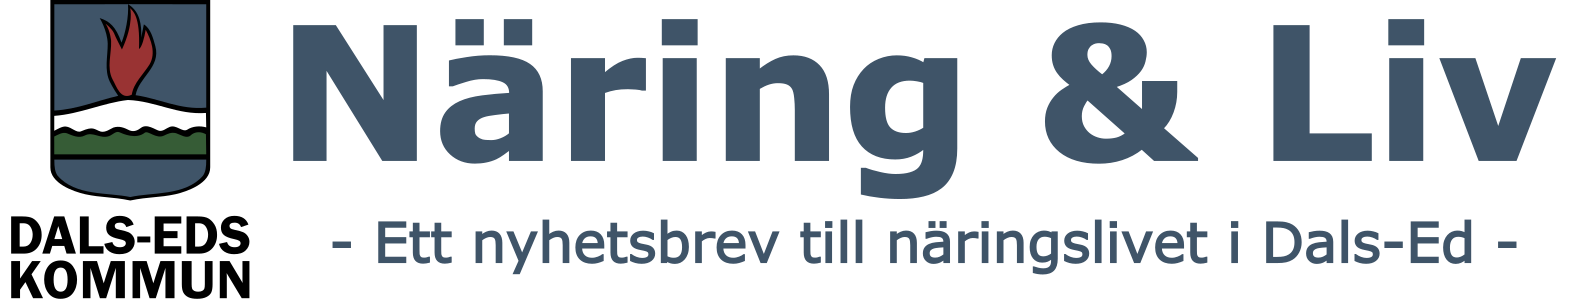 Logga med text: Näring & Liv - Ett nyhetsbrev till näringslivet i Dals-Ed